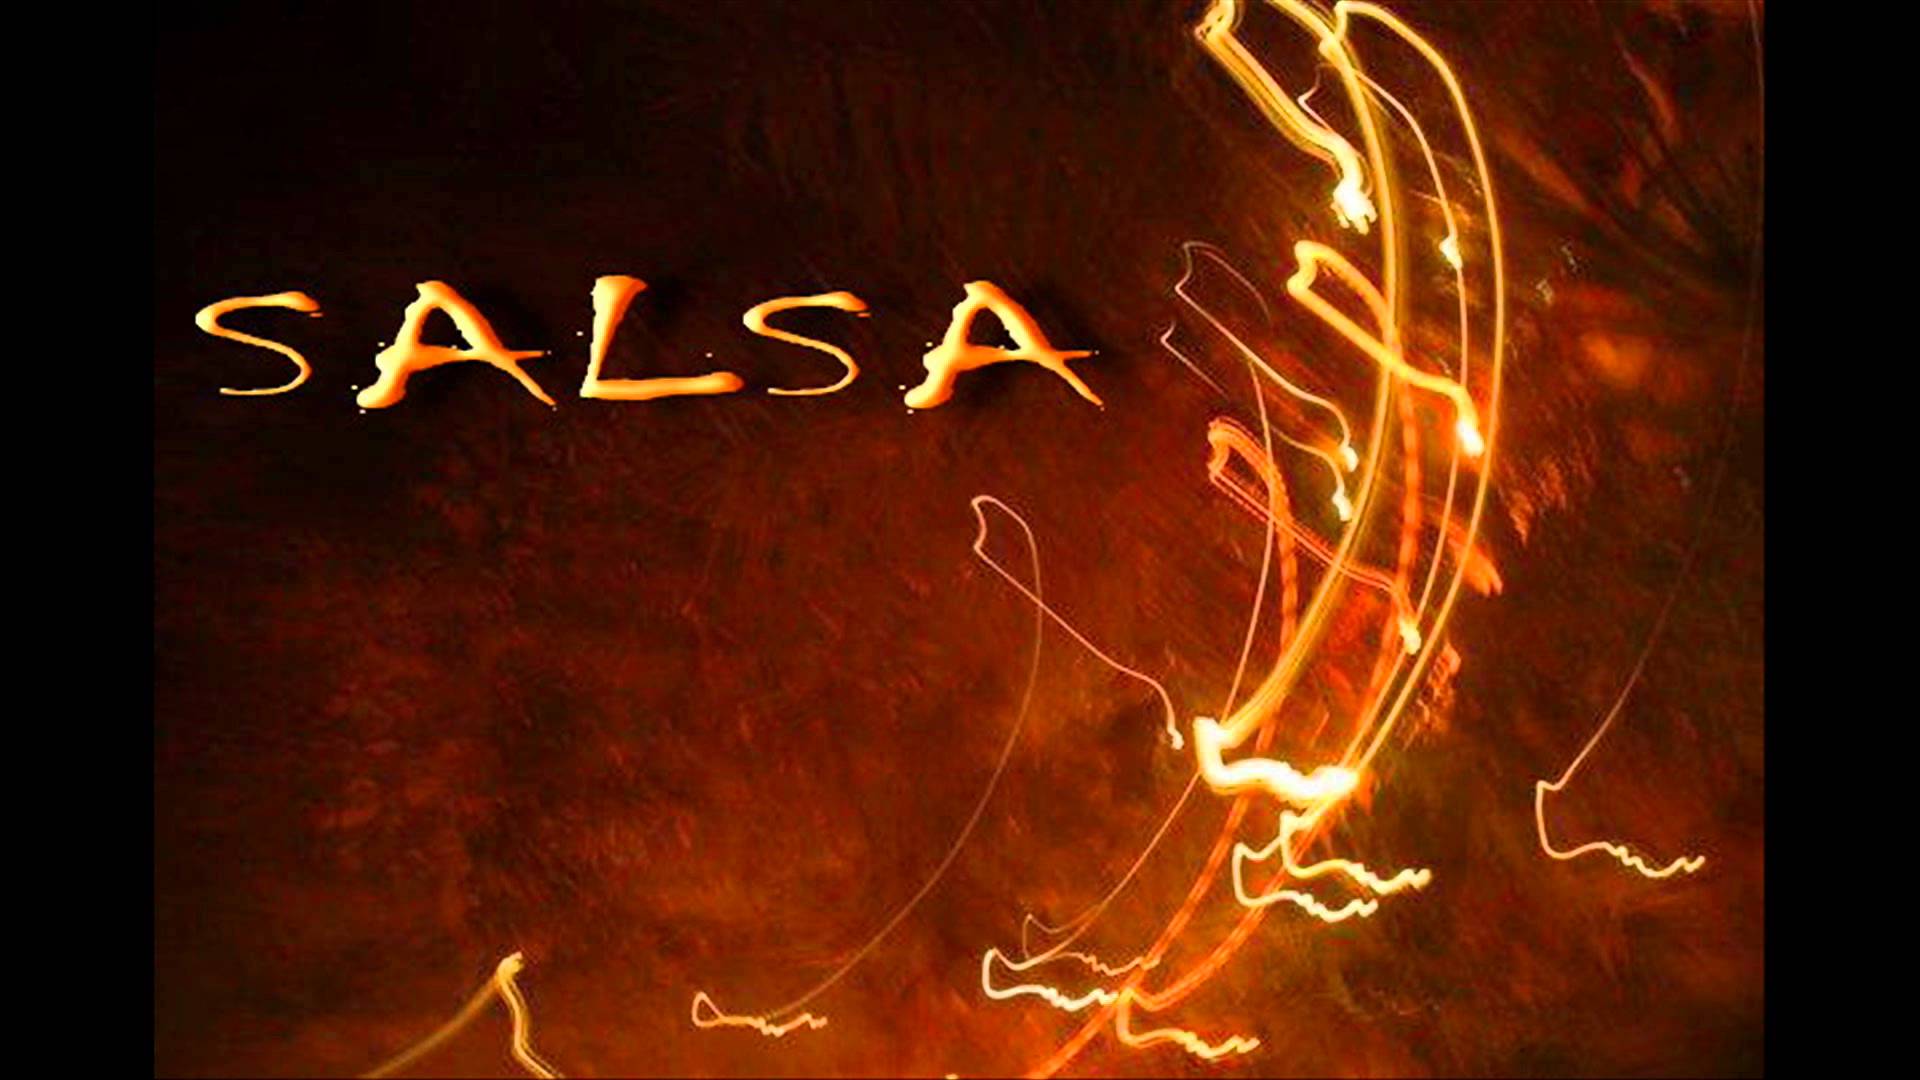 Salsa Wallpaper, HDQ Salsa Image Collection for Desktop, VV.69